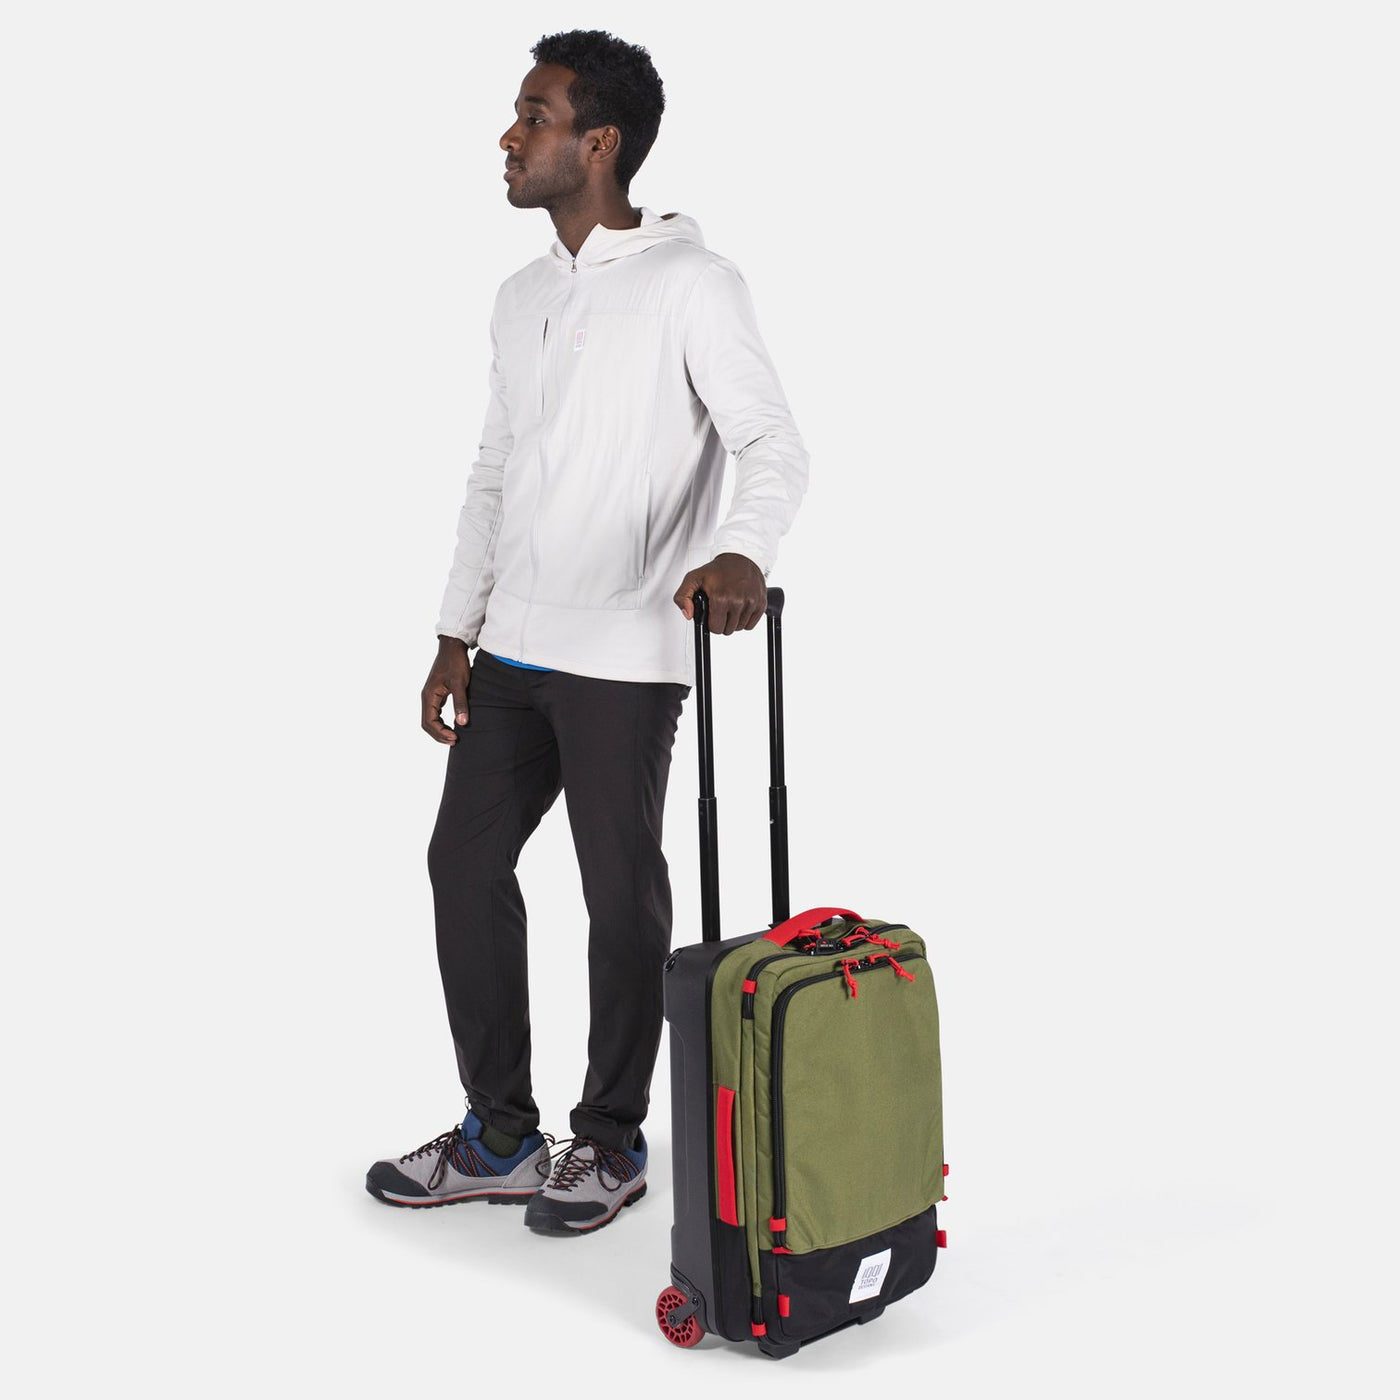 Global Travel Bag Roller - 44L